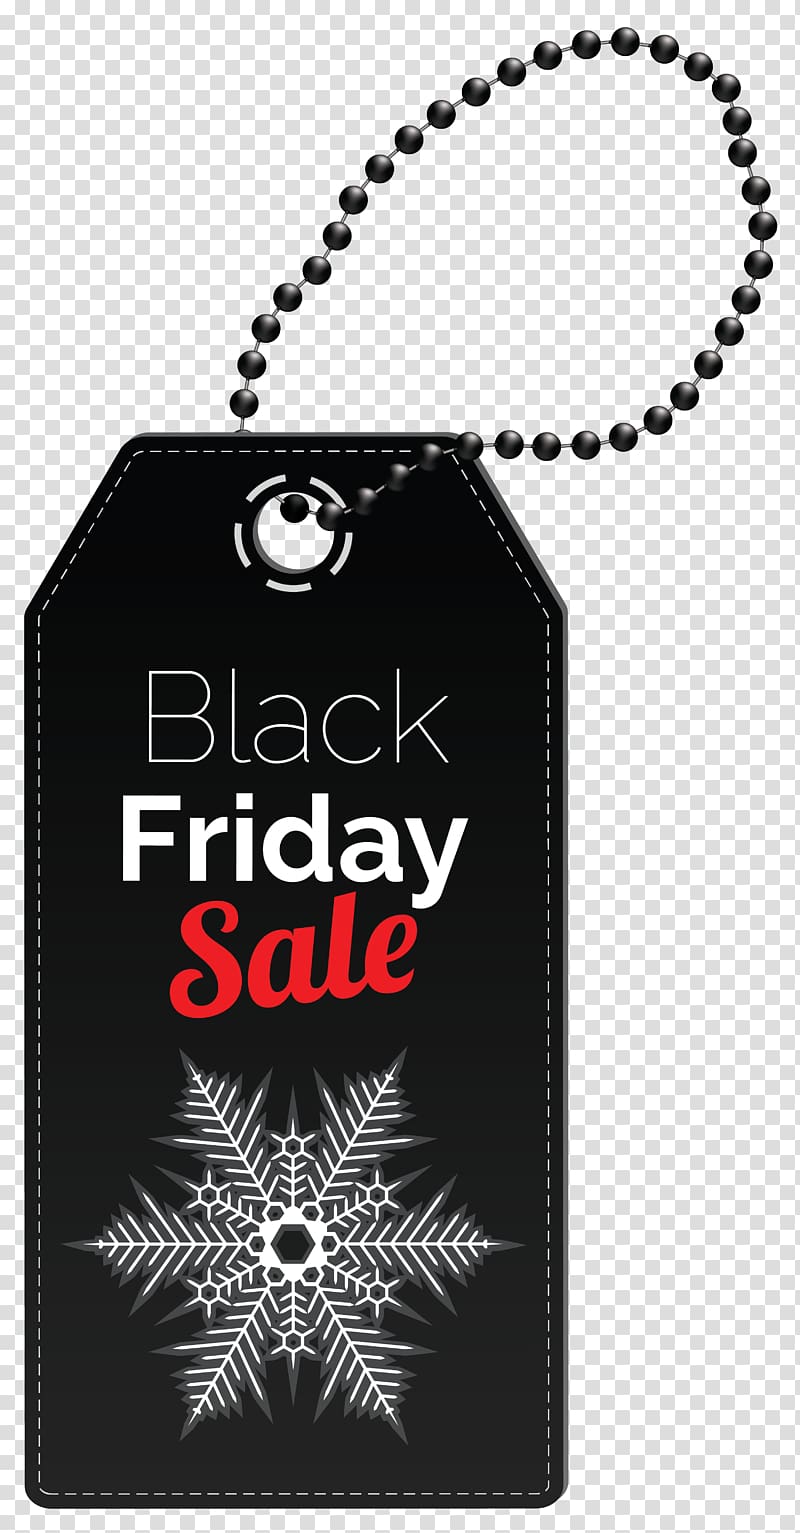 Black Friday Sale tag illustration, Black Friday Sales , Black Friday Sale Tag transparent background PNG clipart